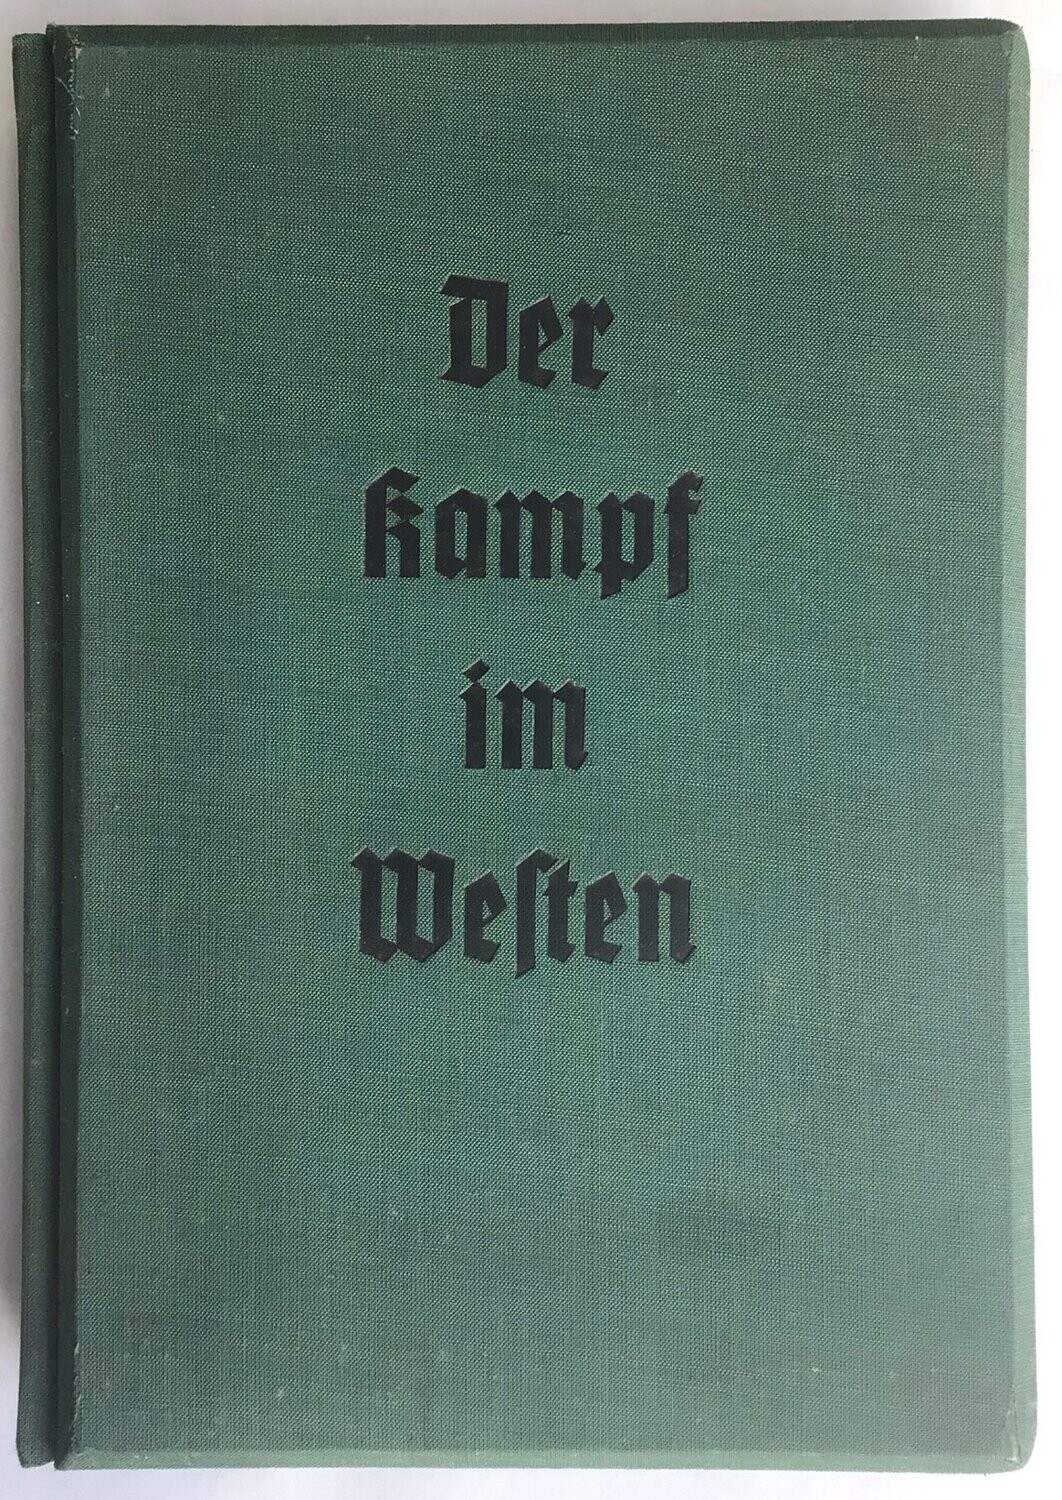 Der Kampf im Westen - Dunkelgrüne Ganzleinen-Ausgabe aus dem Jahr 1941